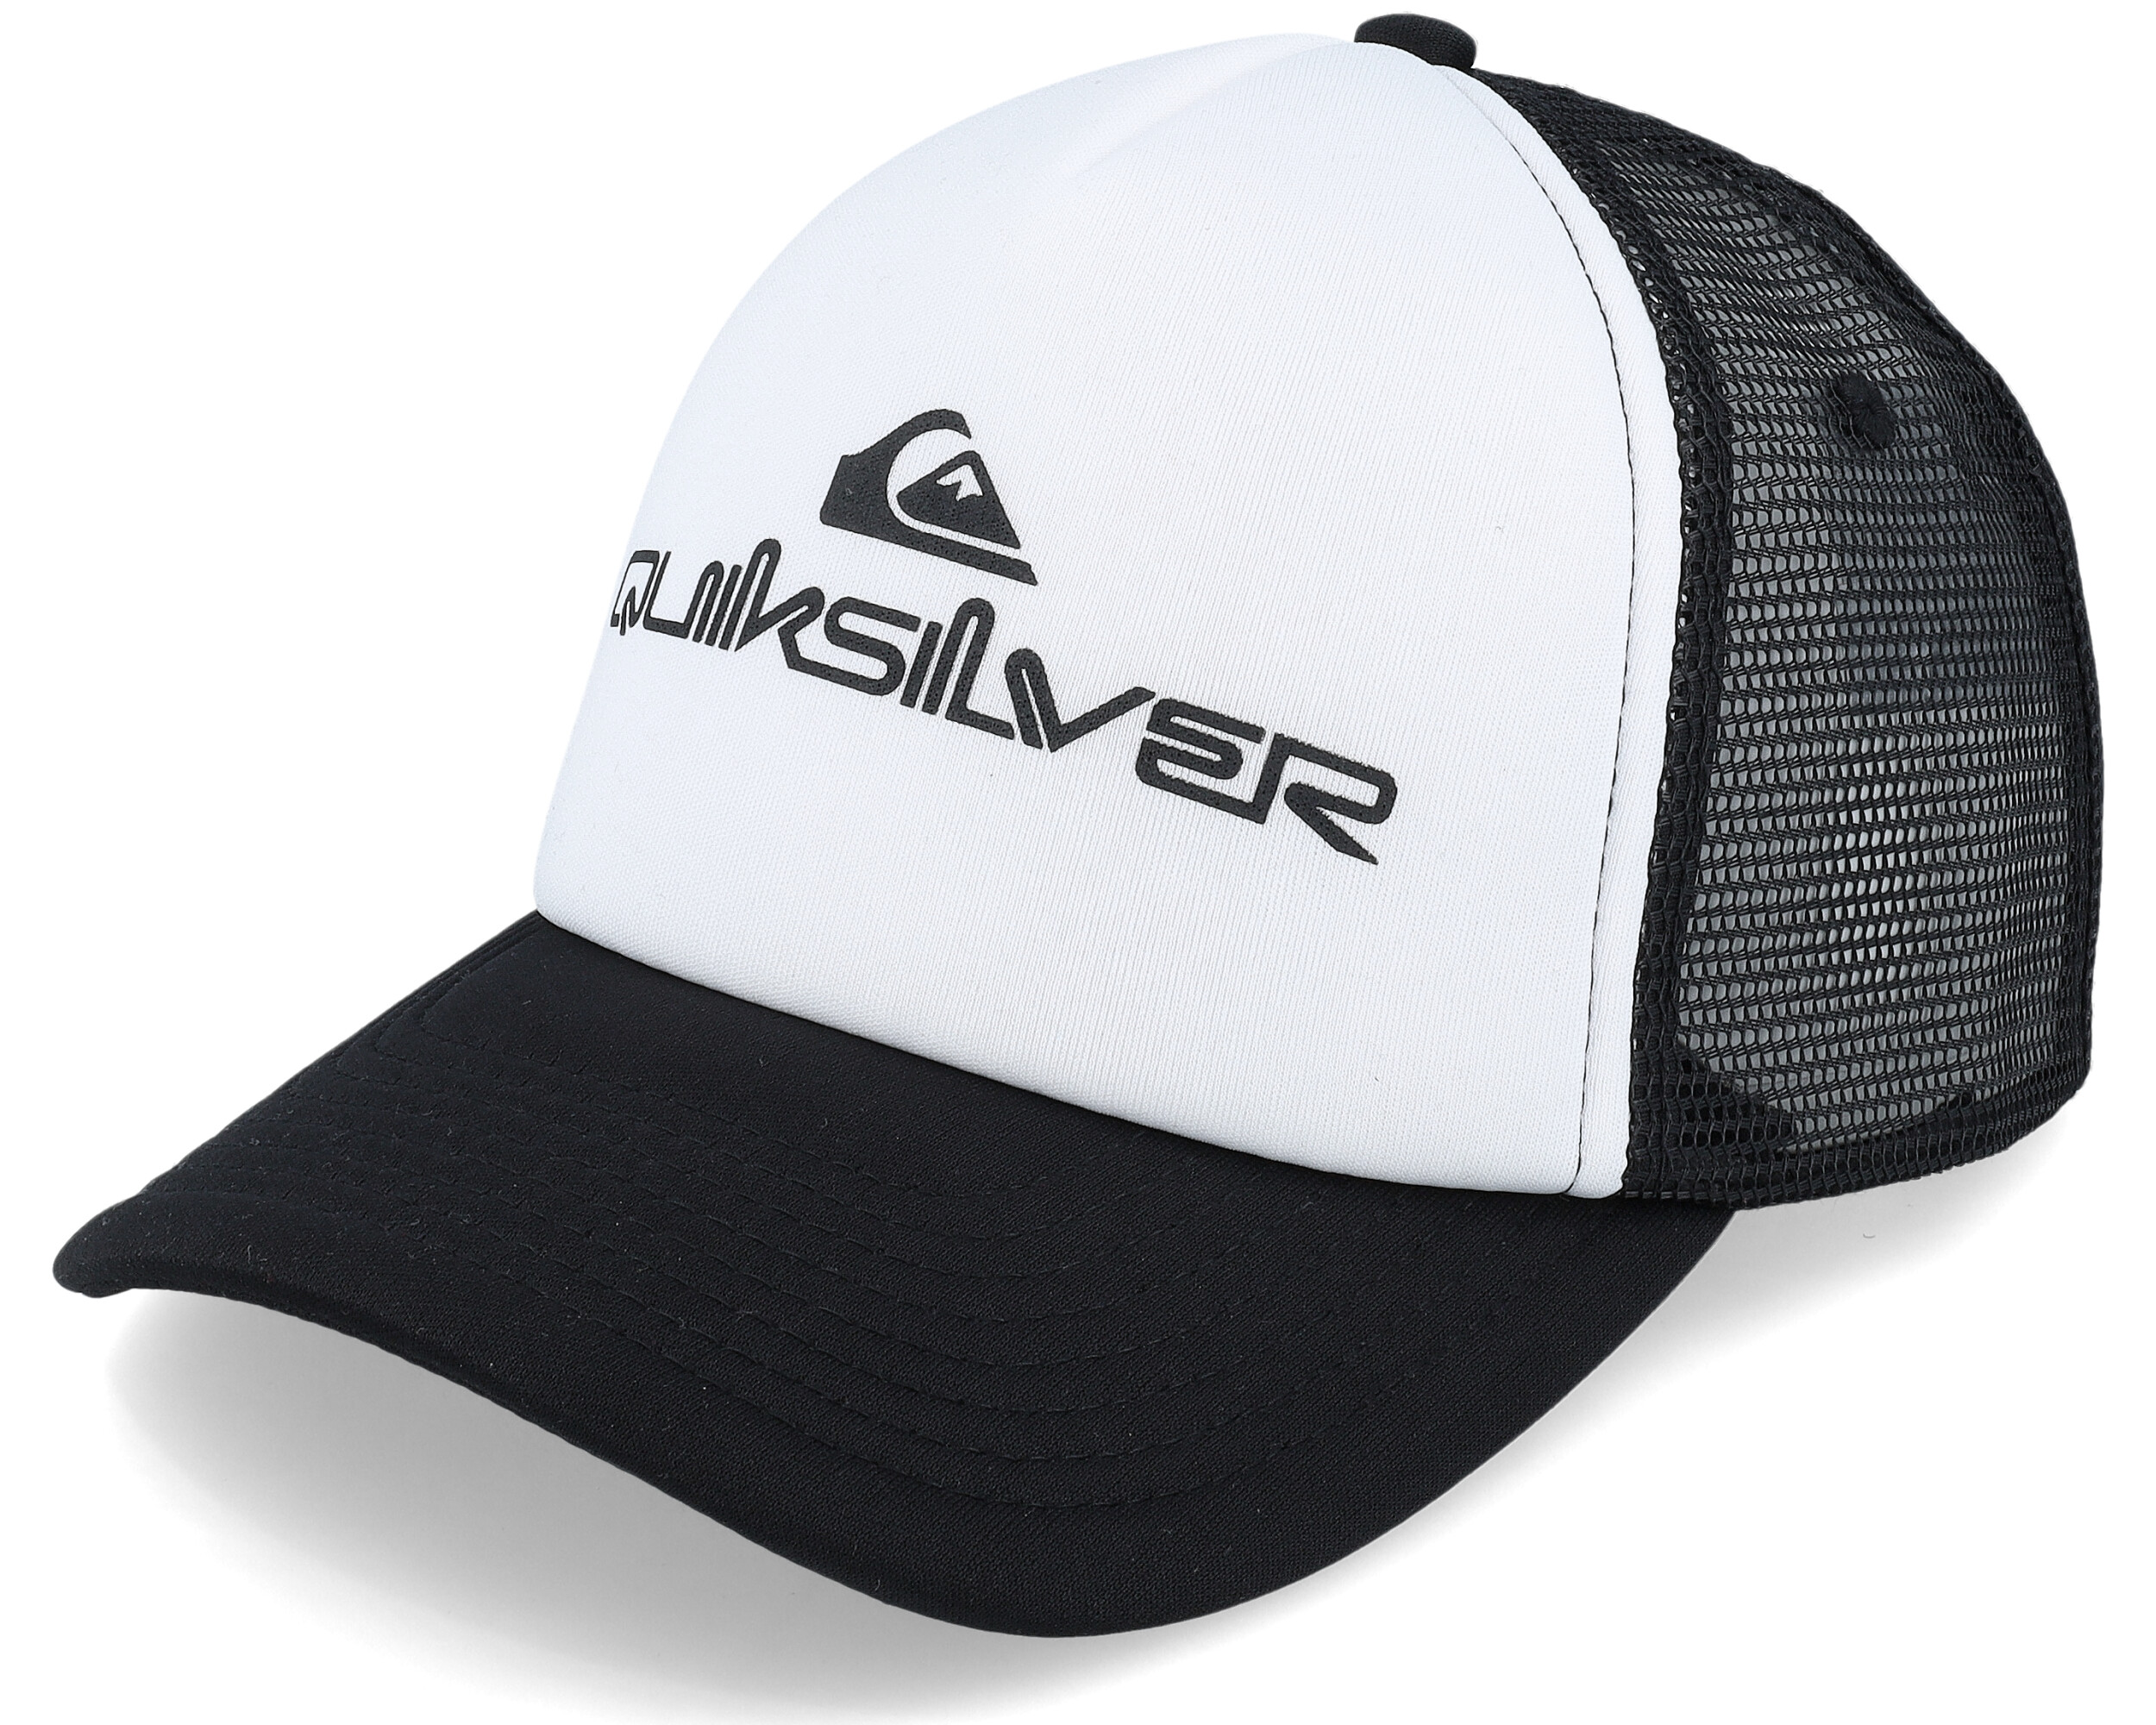 Quiksilver cap Omnistack White/Black - Trucker